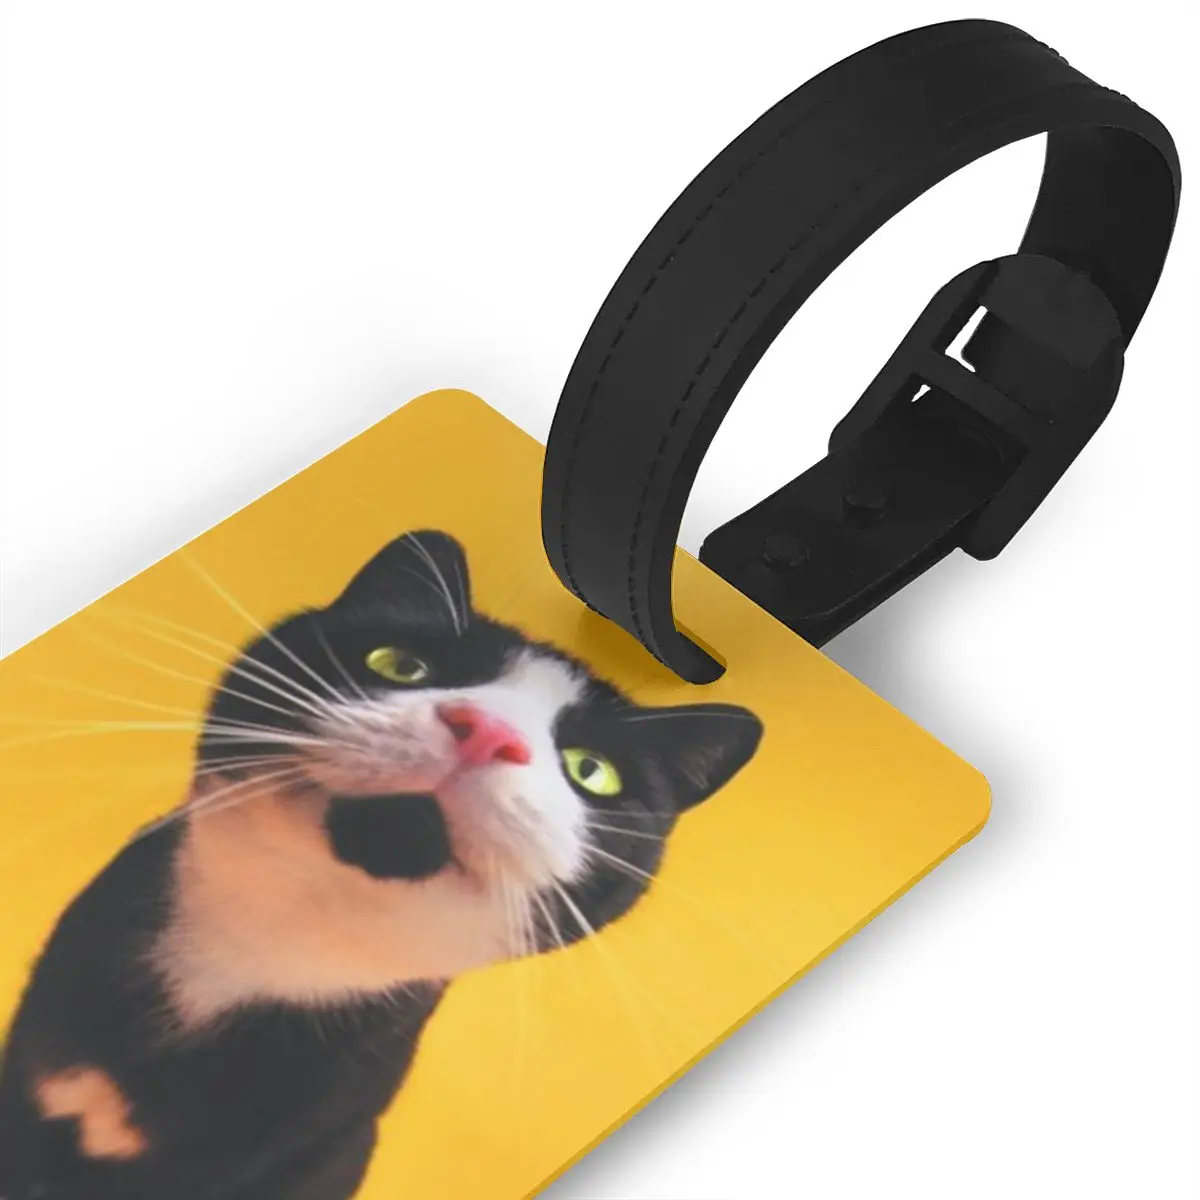 NOISYDESIGNS ПВХ Багаж багажная бирка животные кошка печать желтый чемодан идентификационный адрес Имя этикетки Прямая поставка